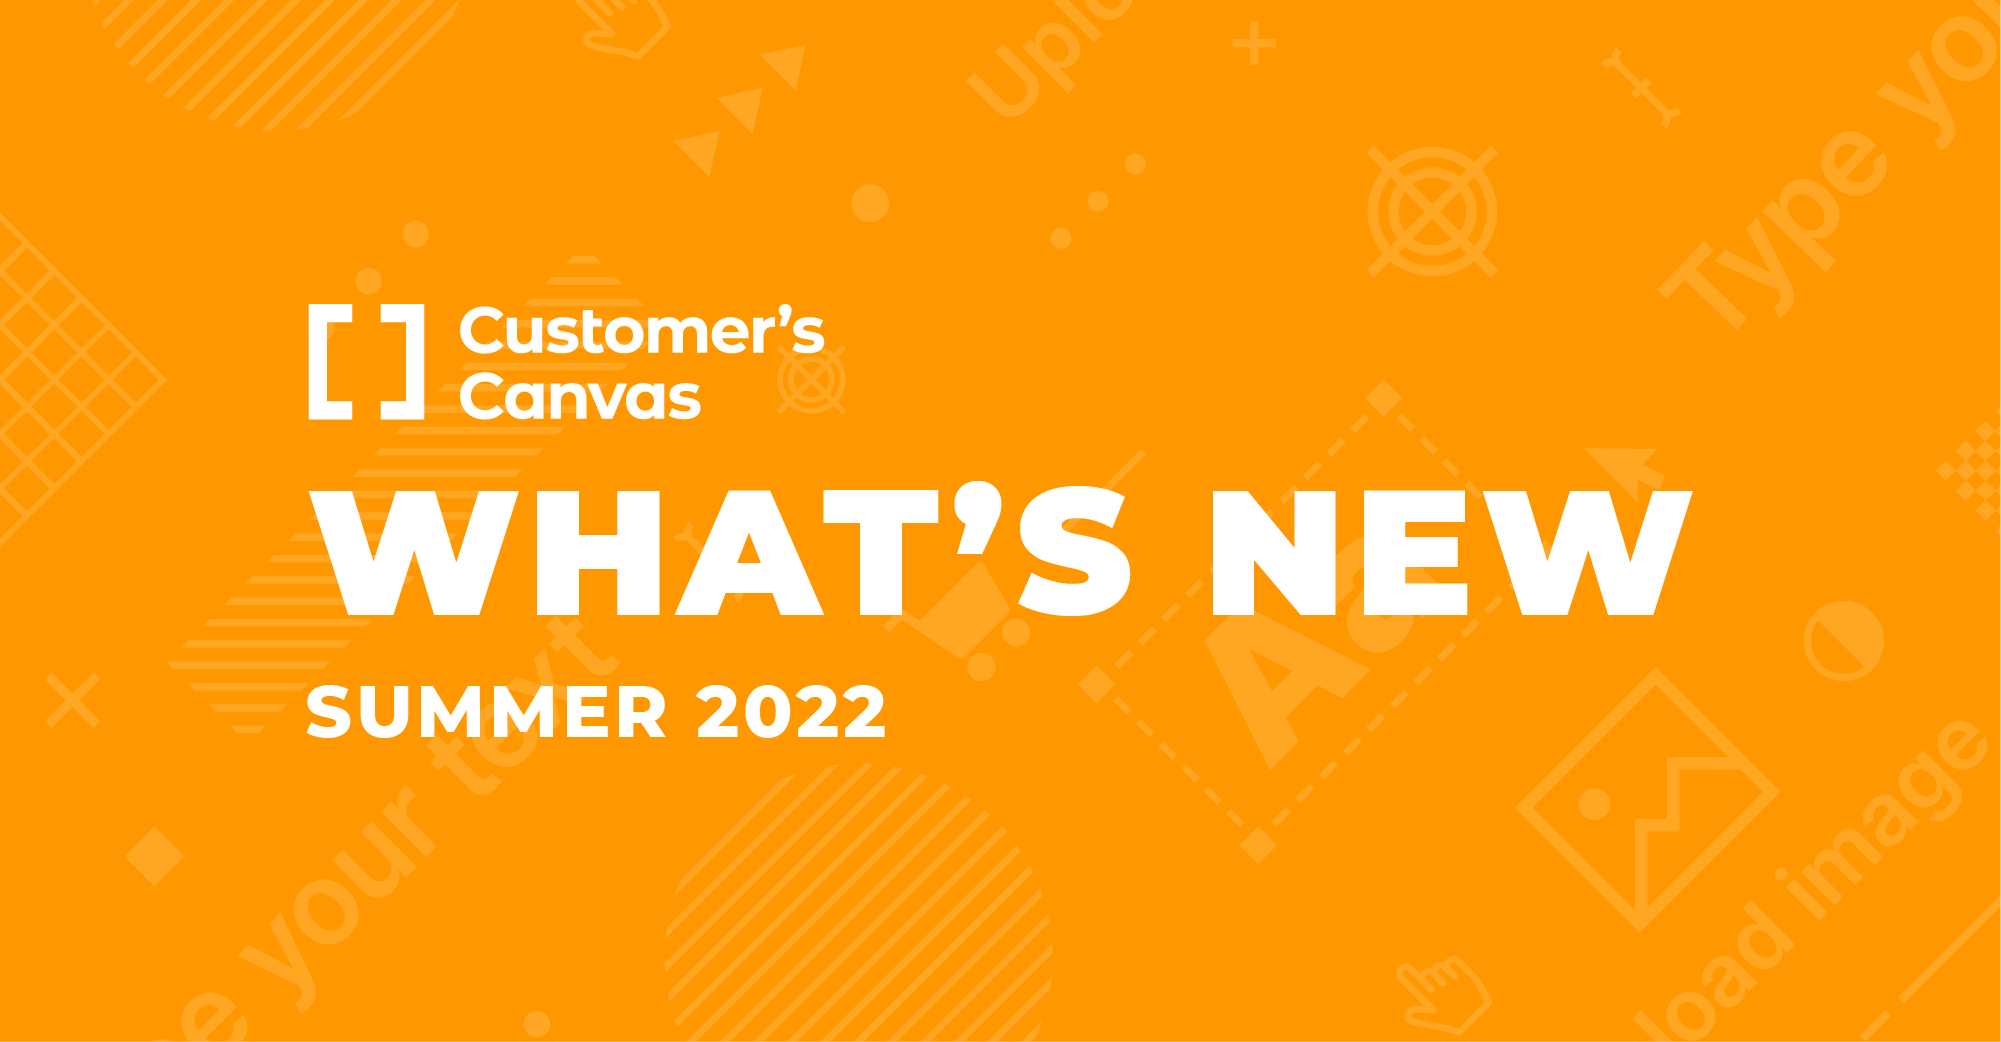 A better Customer’s Canvas: Summer 2022 